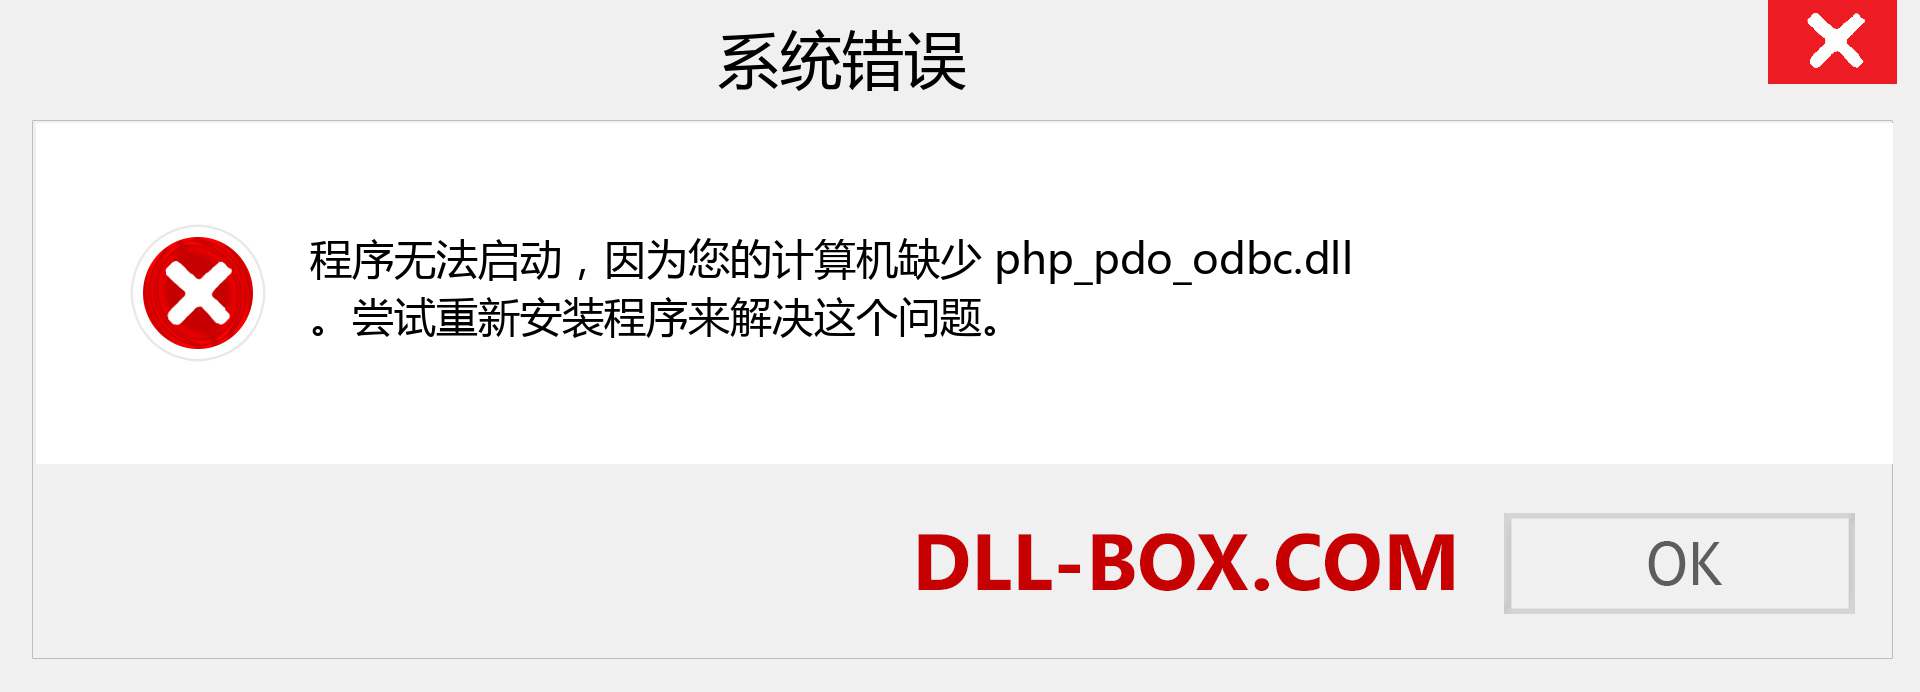 php_pdo_odbc.dll 文件丢失？。 适用于 Windows 7、8、10 的下载 - 修复 Windows、照片、图像上的 php_pdo_odbc dll 丢失错误